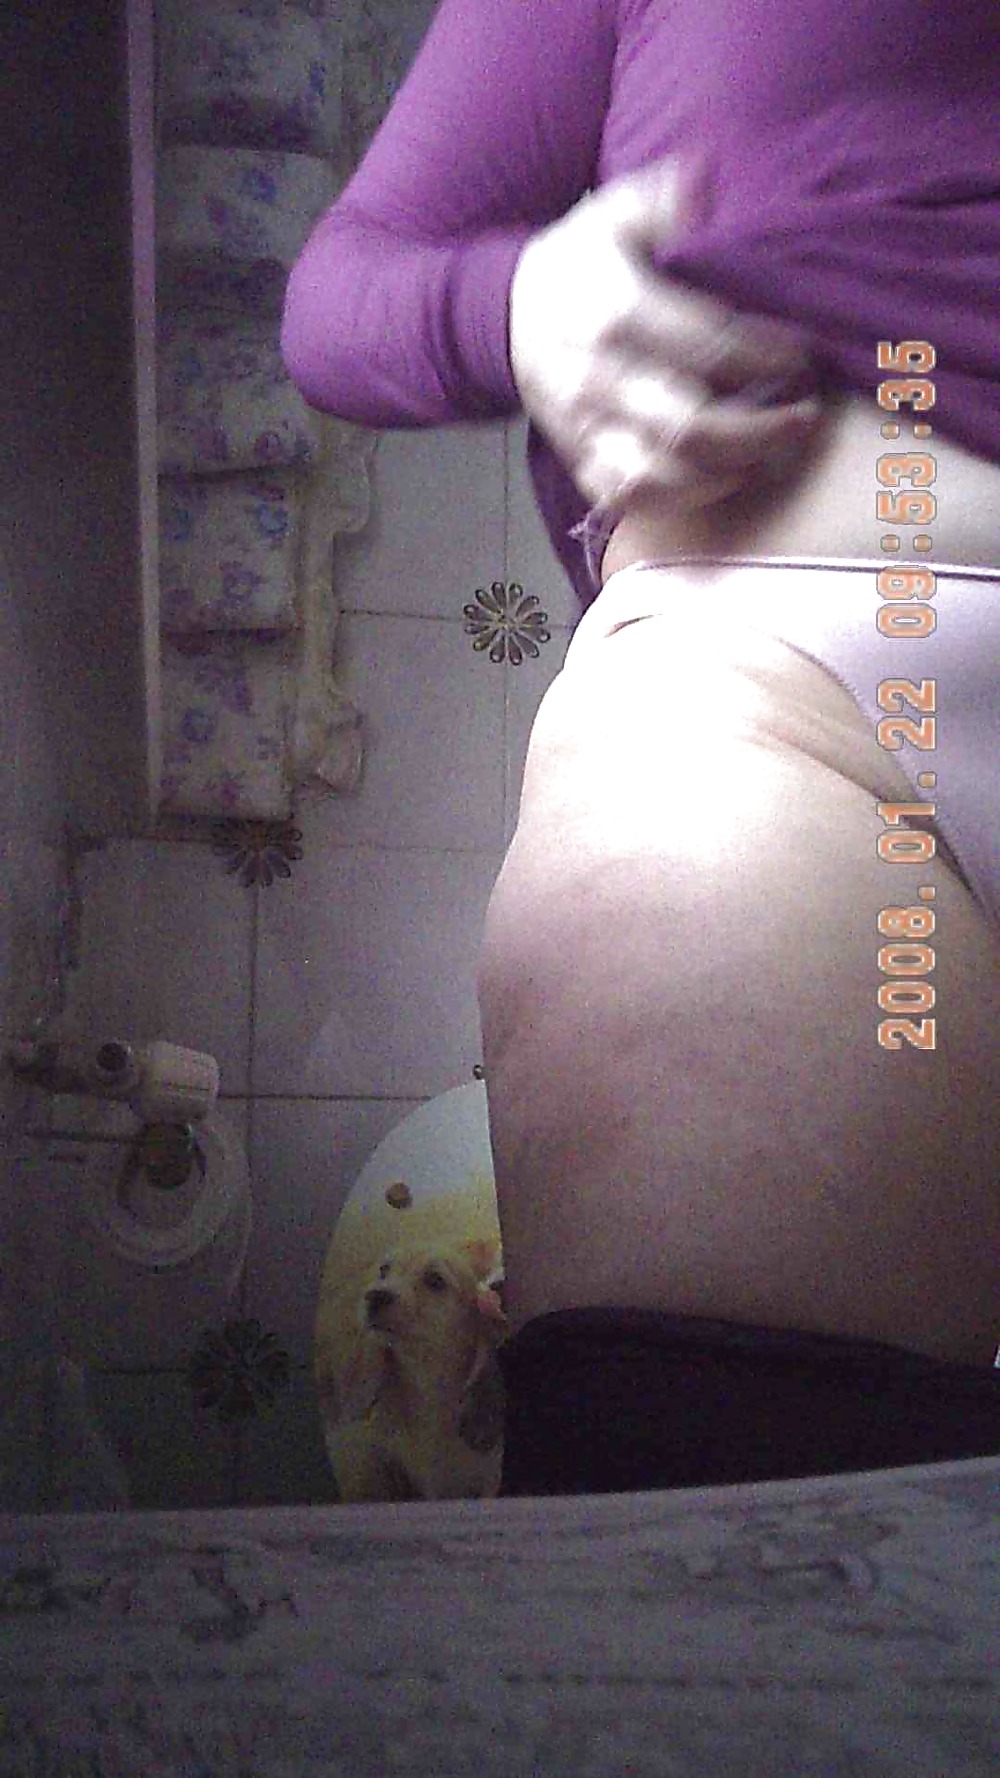 MIA SUOCERA - FOTO TRATTE DA UN VIDEO - MOTHER IN LAW adult photos